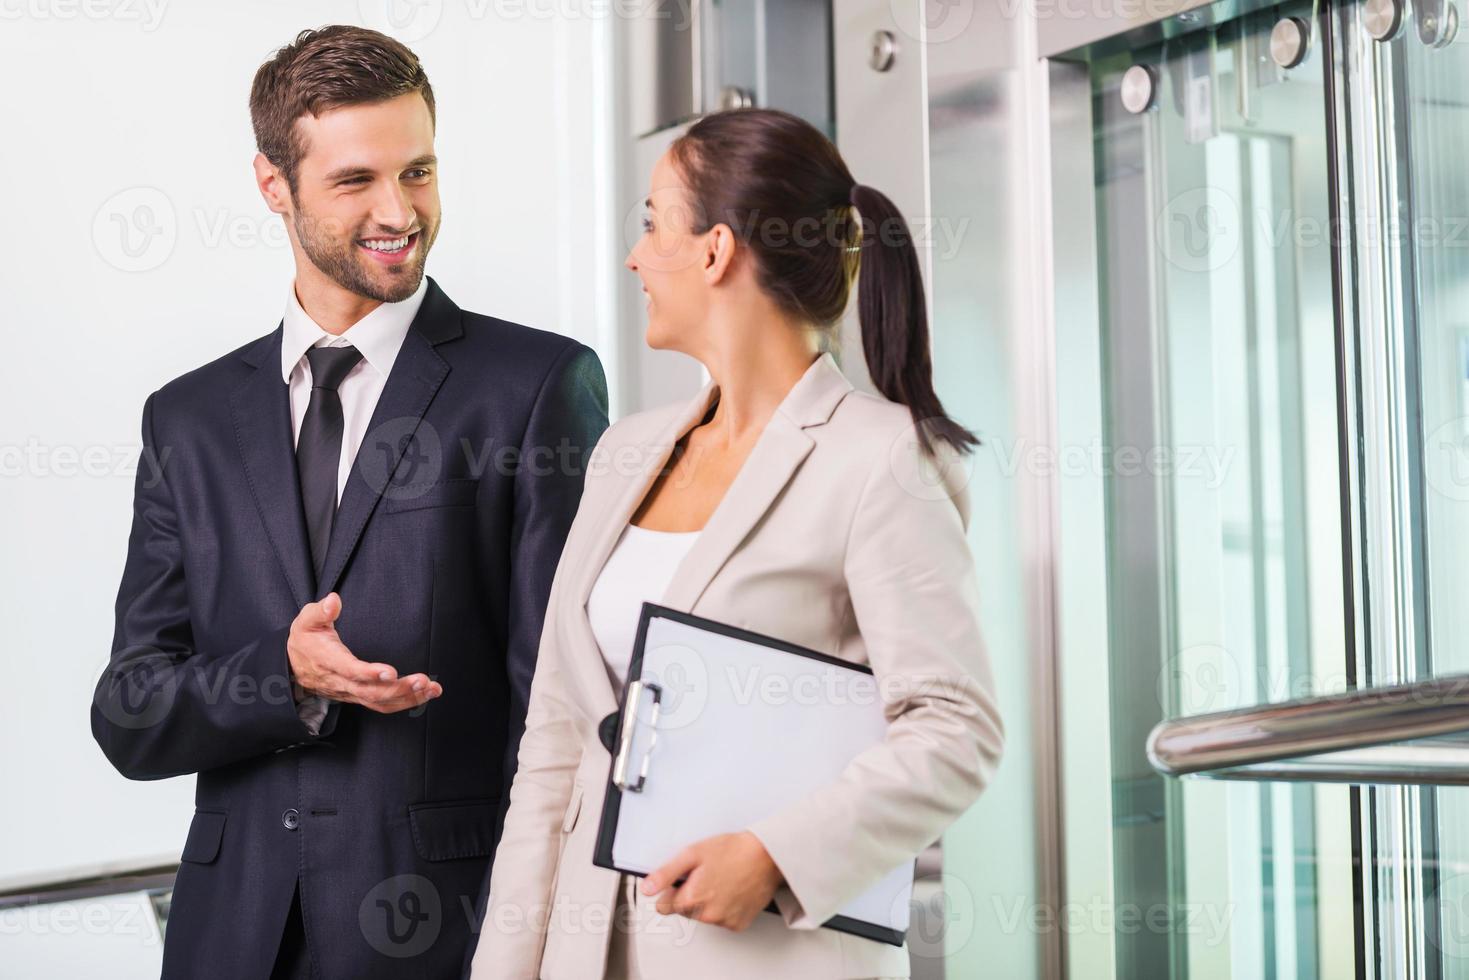 discutiendo el proyecto con un colega. dos alegres empresarios discutiendo algo y sonriendo mientras salen del ascensor foto